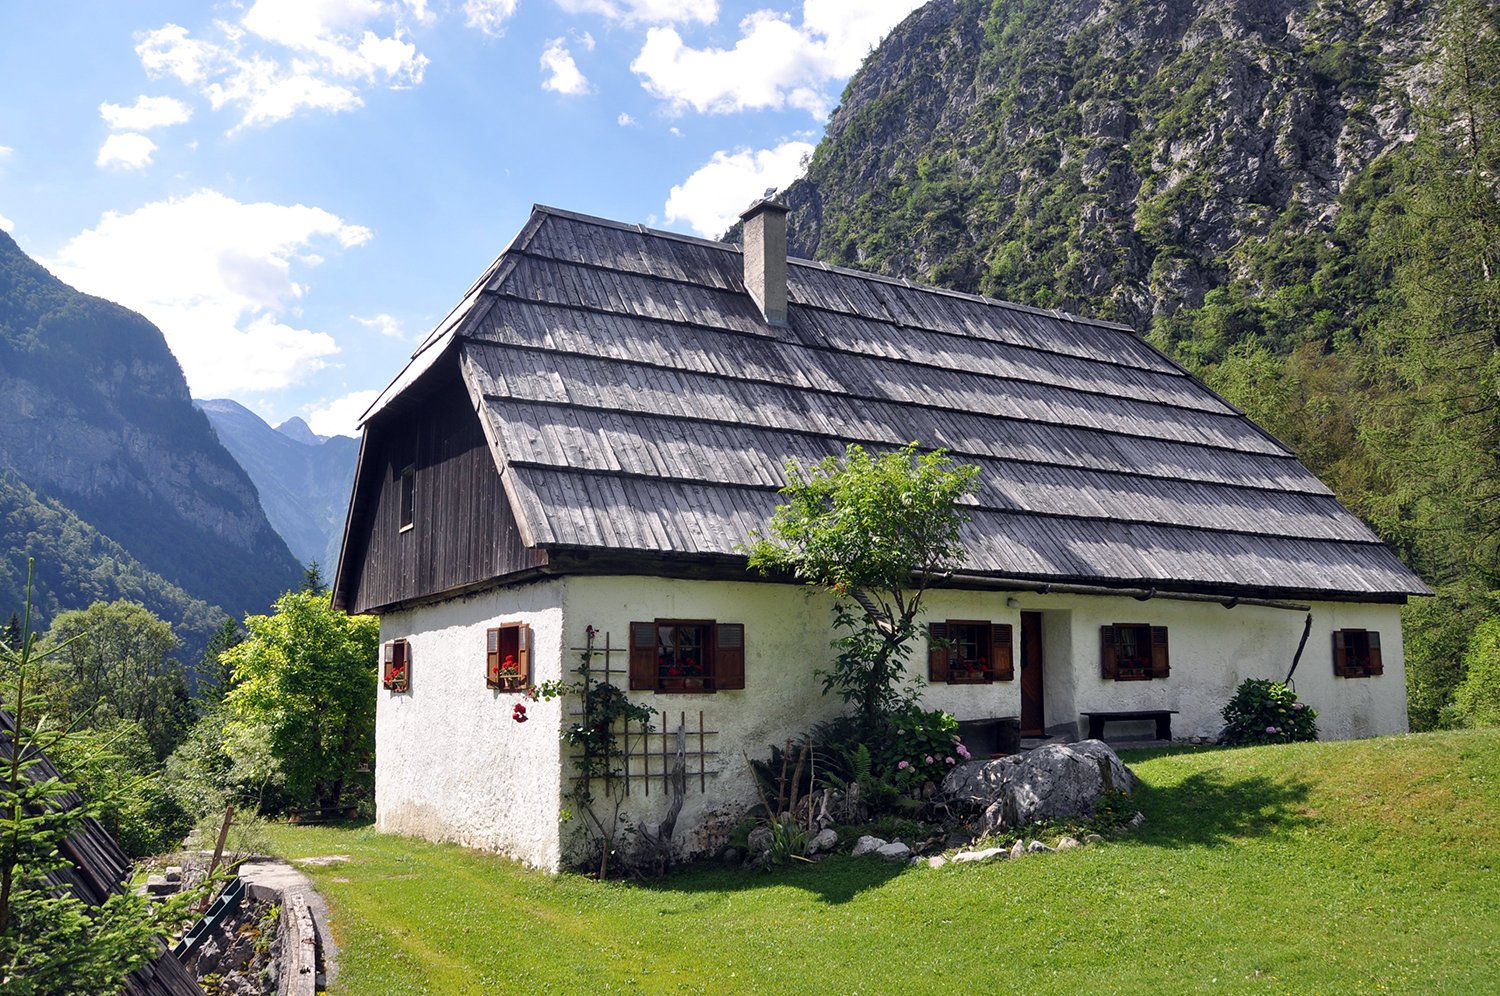 Countryhouse Mountains Bovec Slovenia Travel